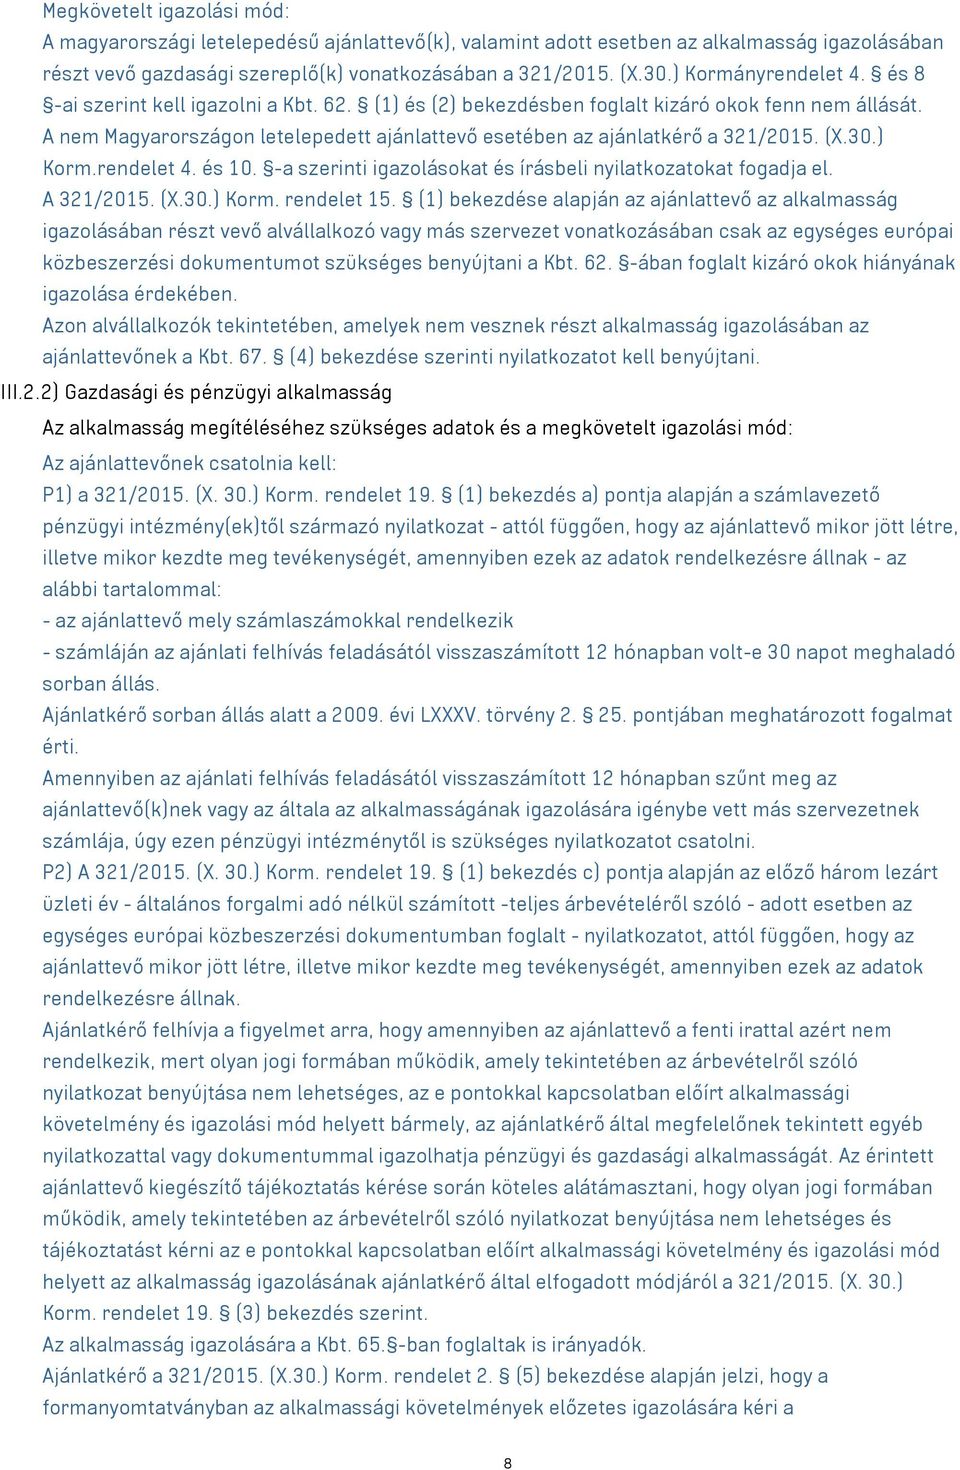 A nem Magyarországon letelepedett ajánlattevő esetében az ajánlatkérő a 321/2015. (X.30.) Korm.rendelet 4. és 10. -a szerinti igazolásokat és írásbeli nyilatkozatokat fogadja el. A 321/2015. (X.30.) Korm. rendelet 15.